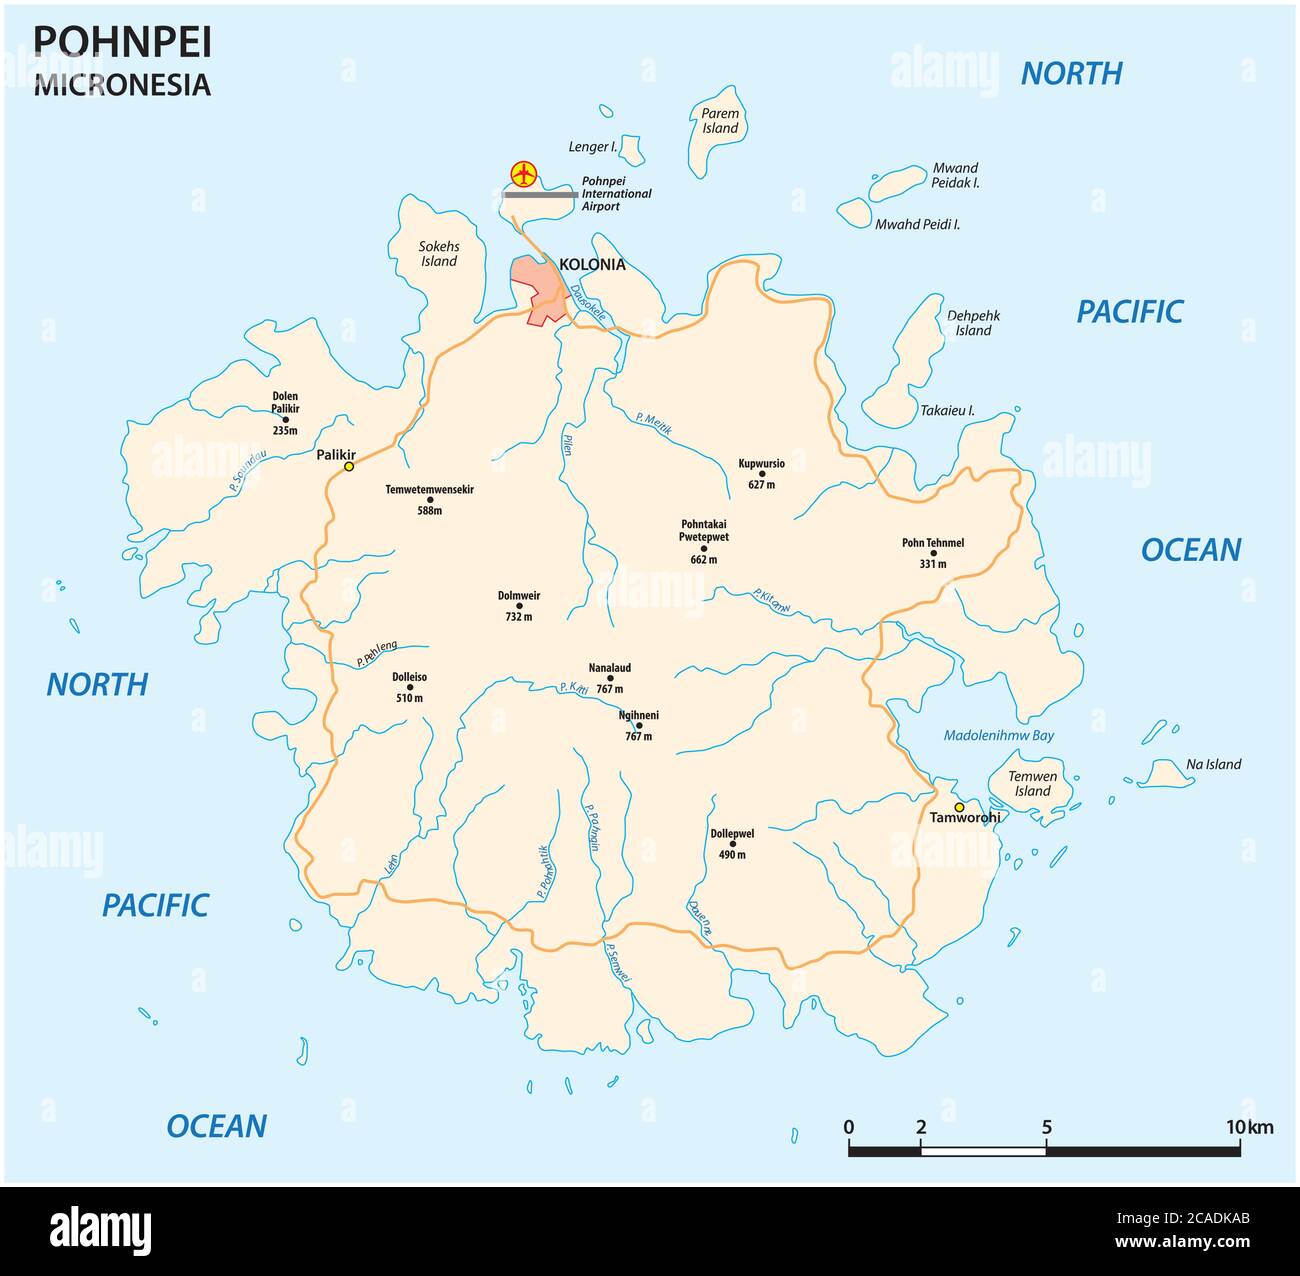 Vektor-Straßenkarte der wichtigsten Mikronesianischen Insel Pohnpei Stock Vektor